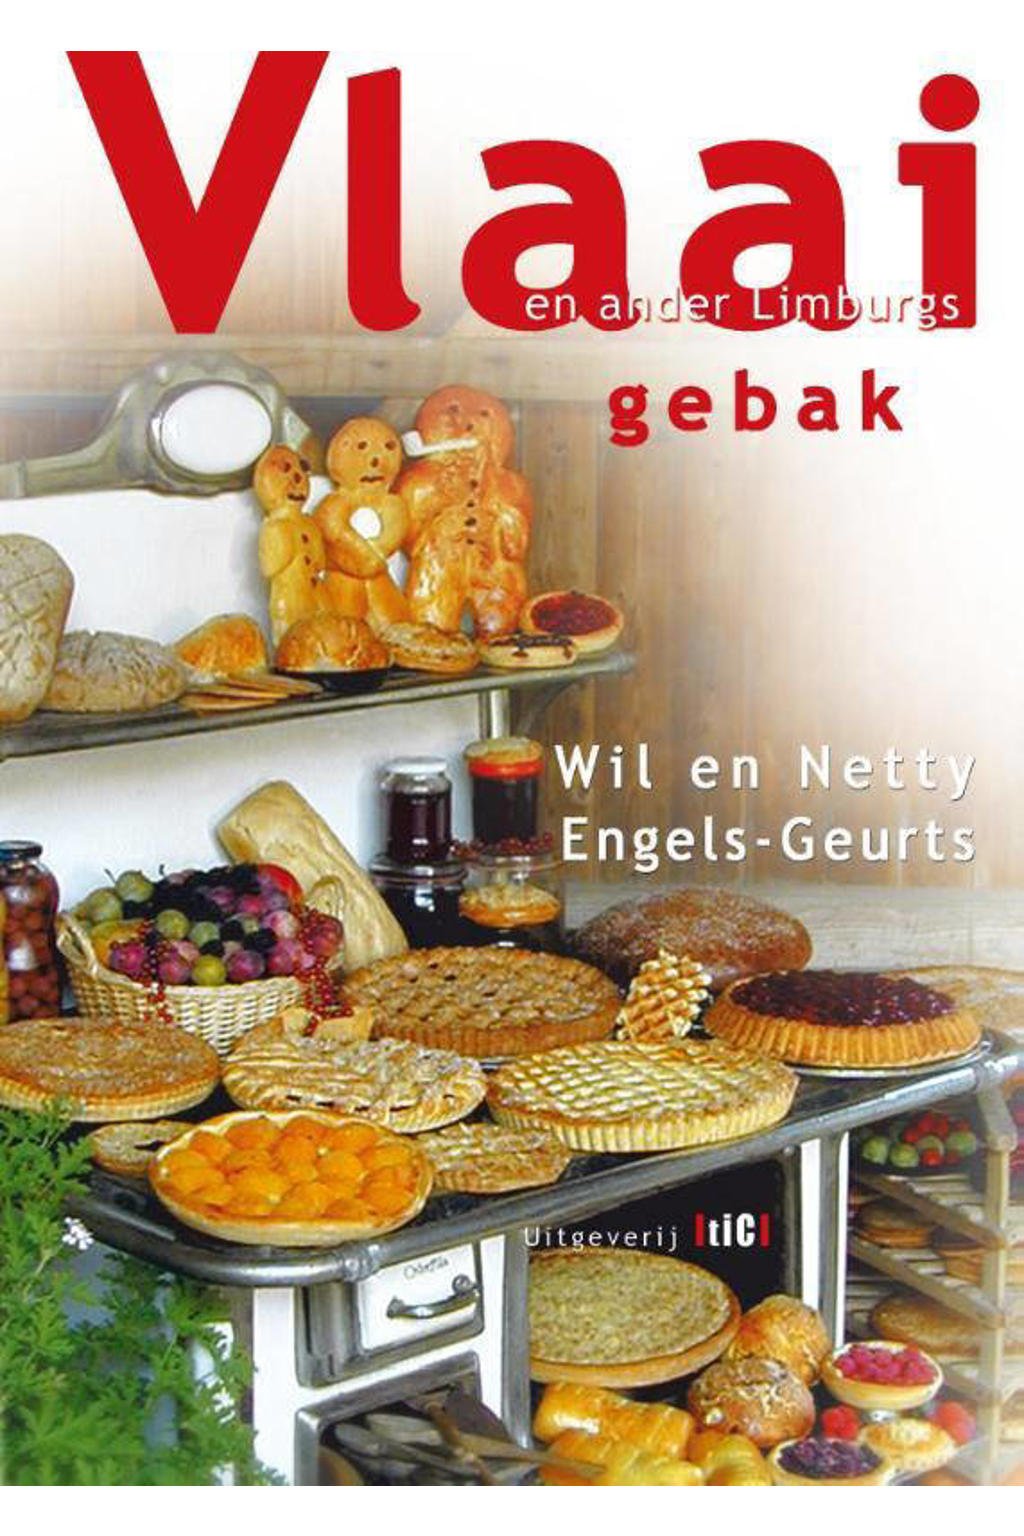 Vlaai en ander Limburgs gebak - Wil Engels-Geurts en Netty Engels-Geurts